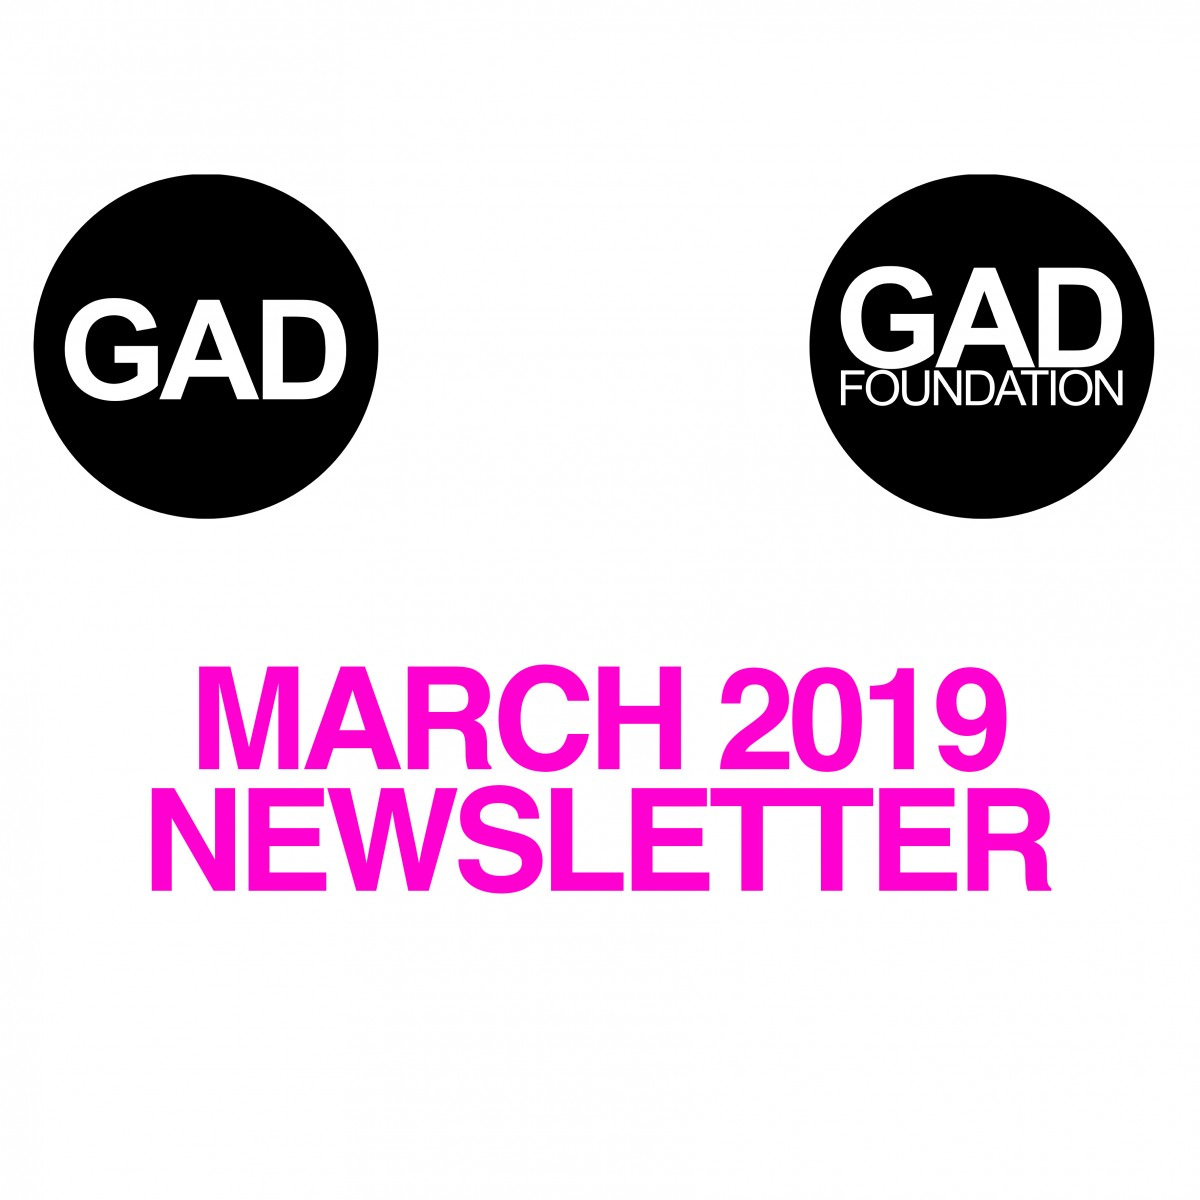 Mart 2019 Newsletter